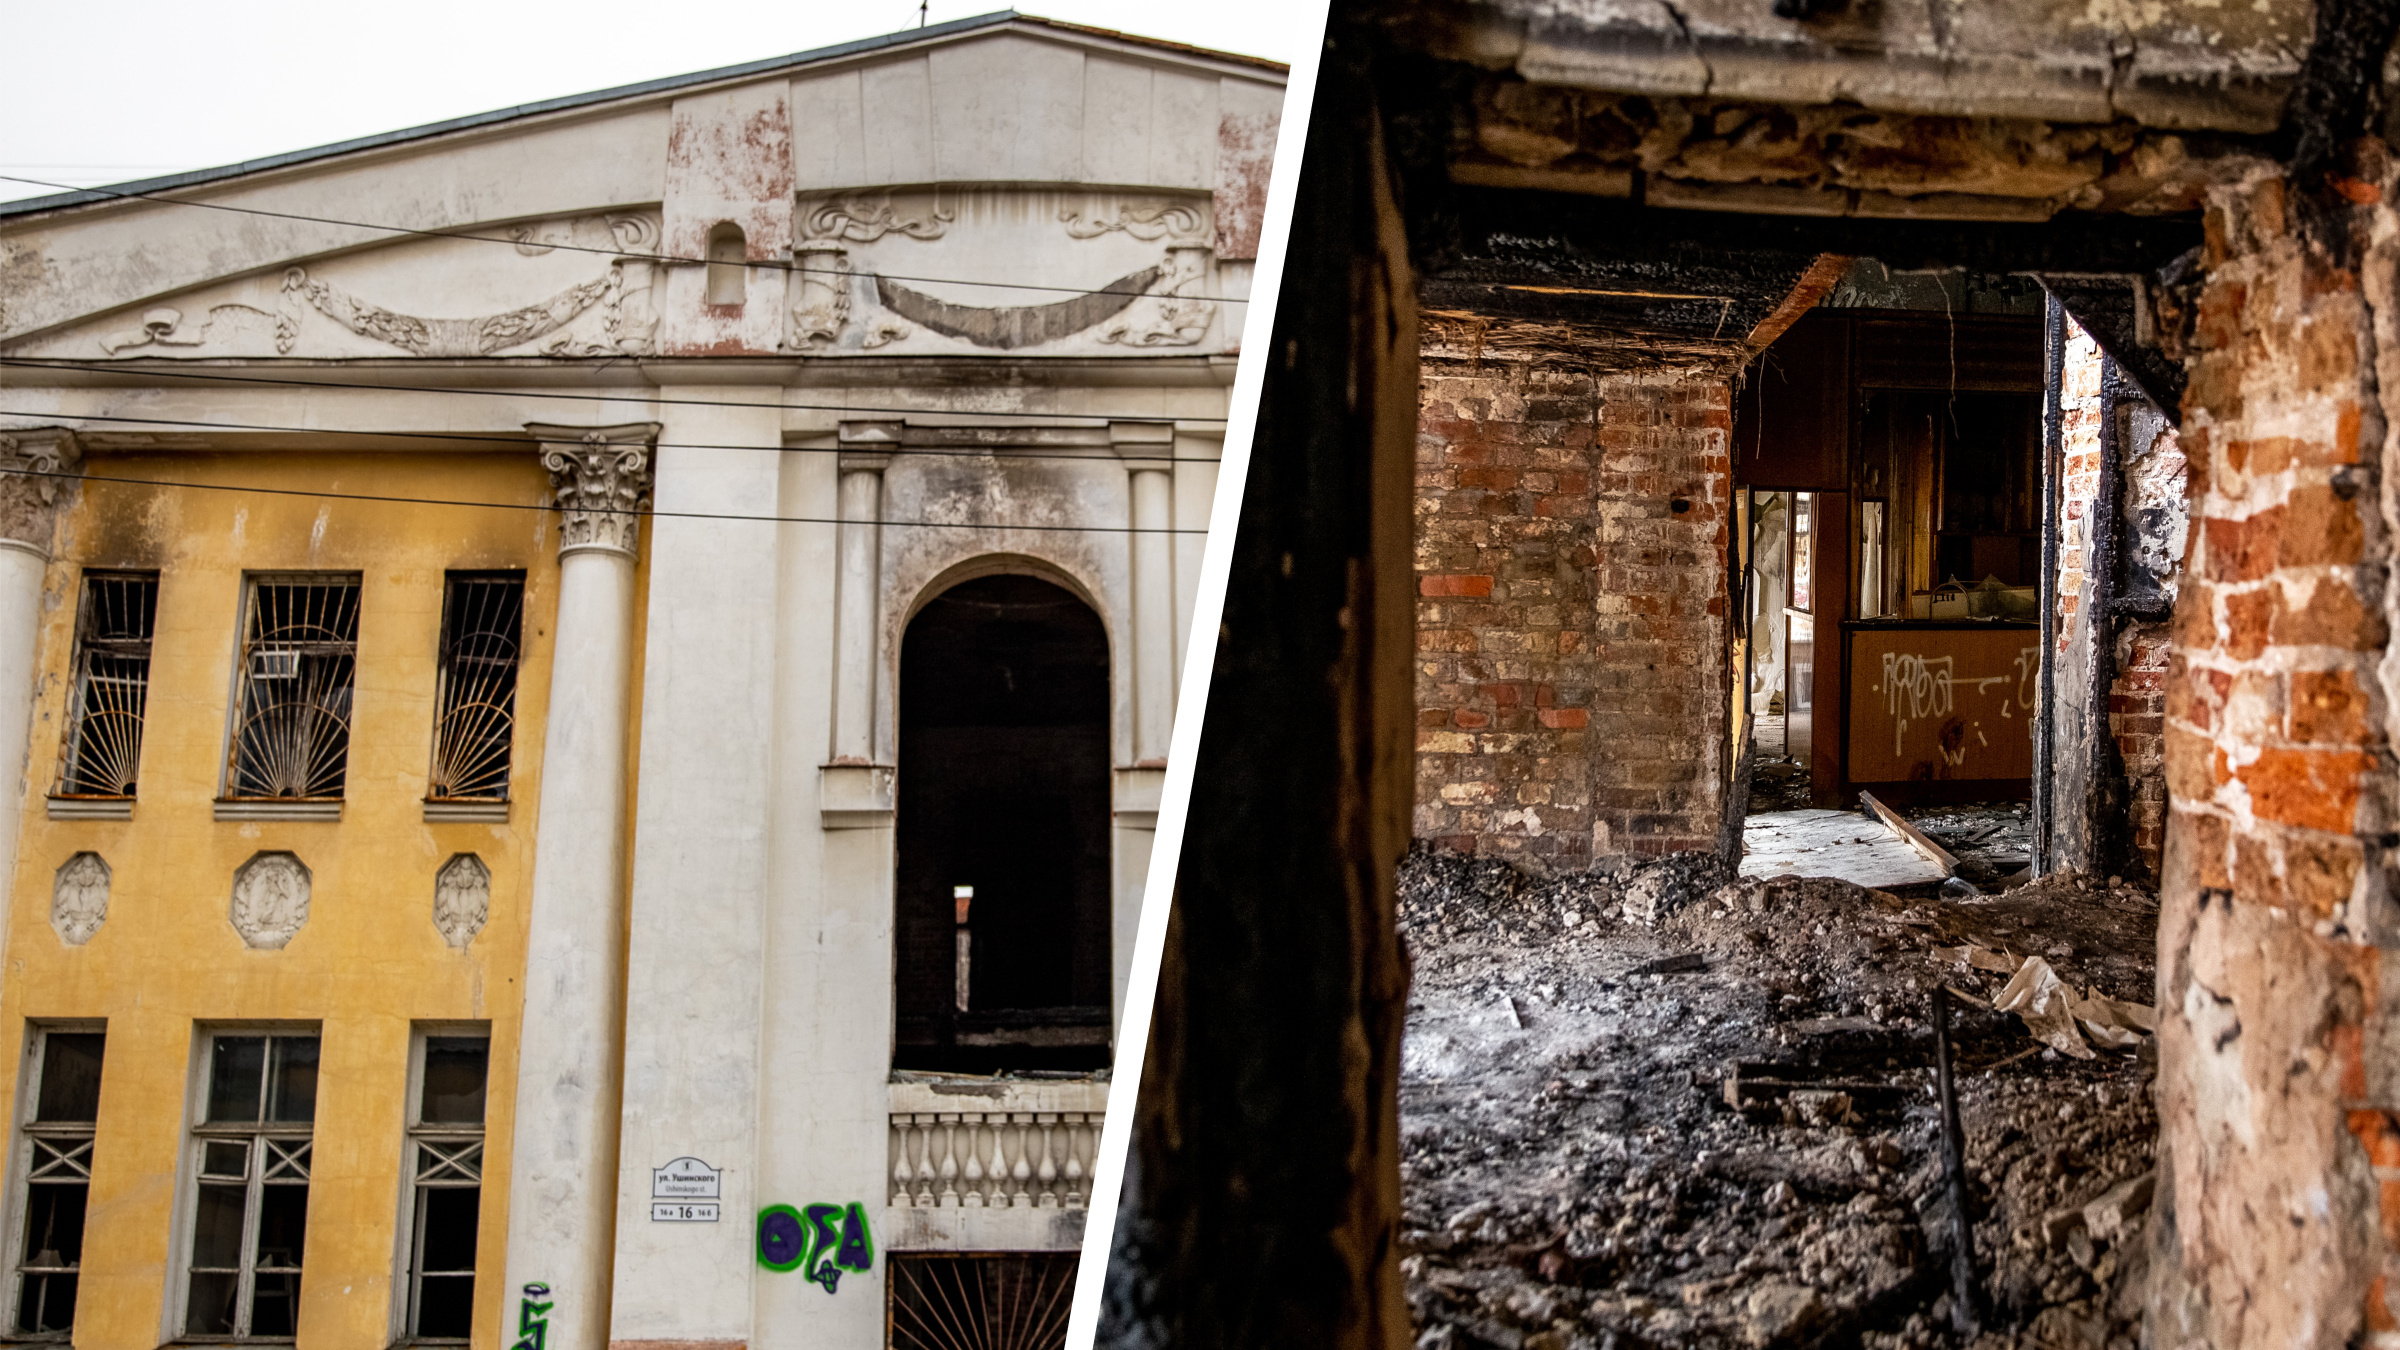 Под изящной лепниной — хлам на сгоревших досках: как выглядит изнутри усадьба в центре Ярославля